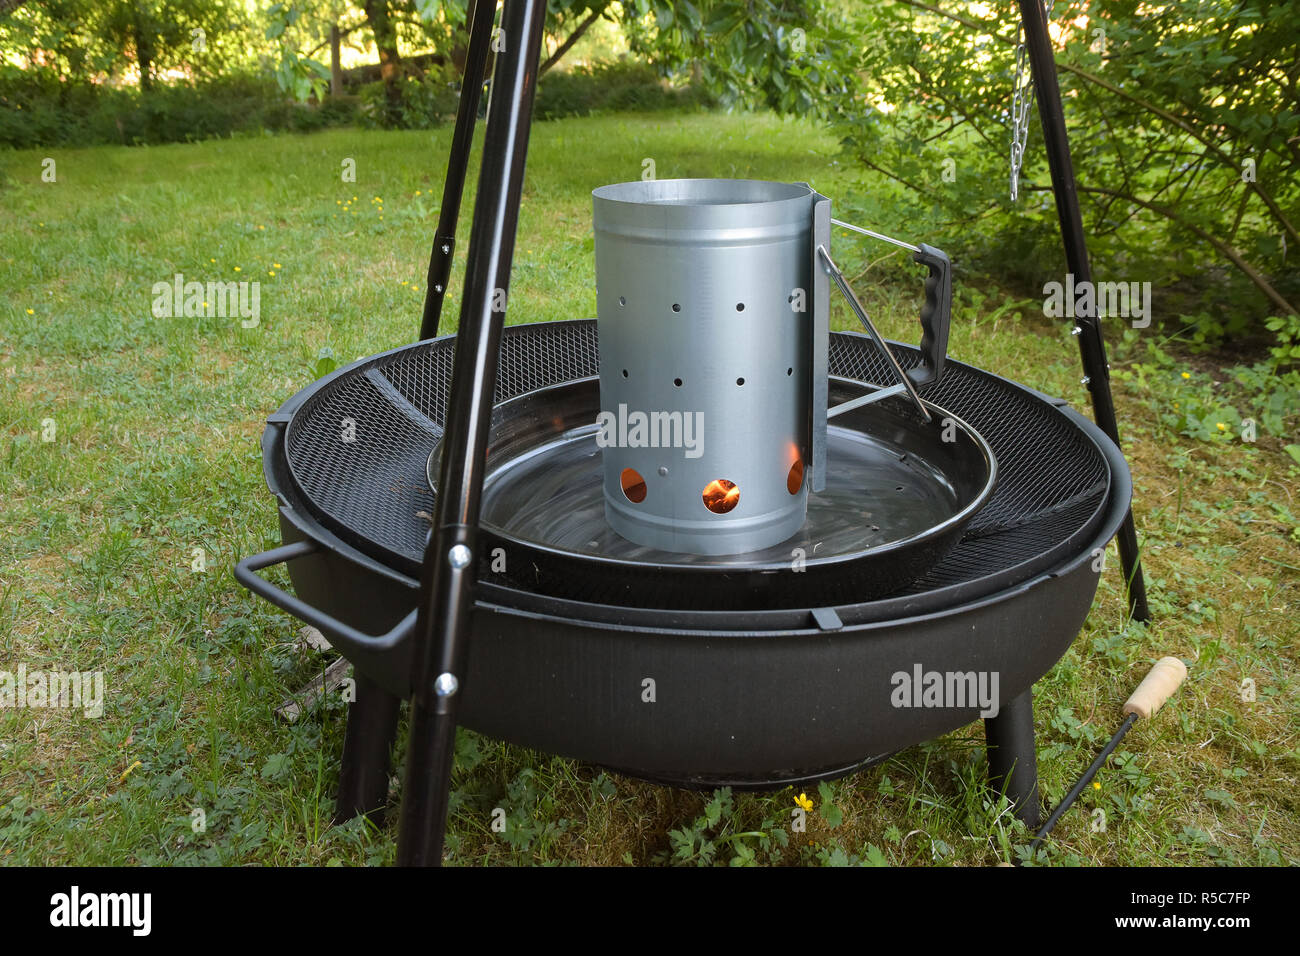 Grill Holzkohle Chimney Starter auf einem schwarzen Stativ schwenken Grill im Garten Stockfoto